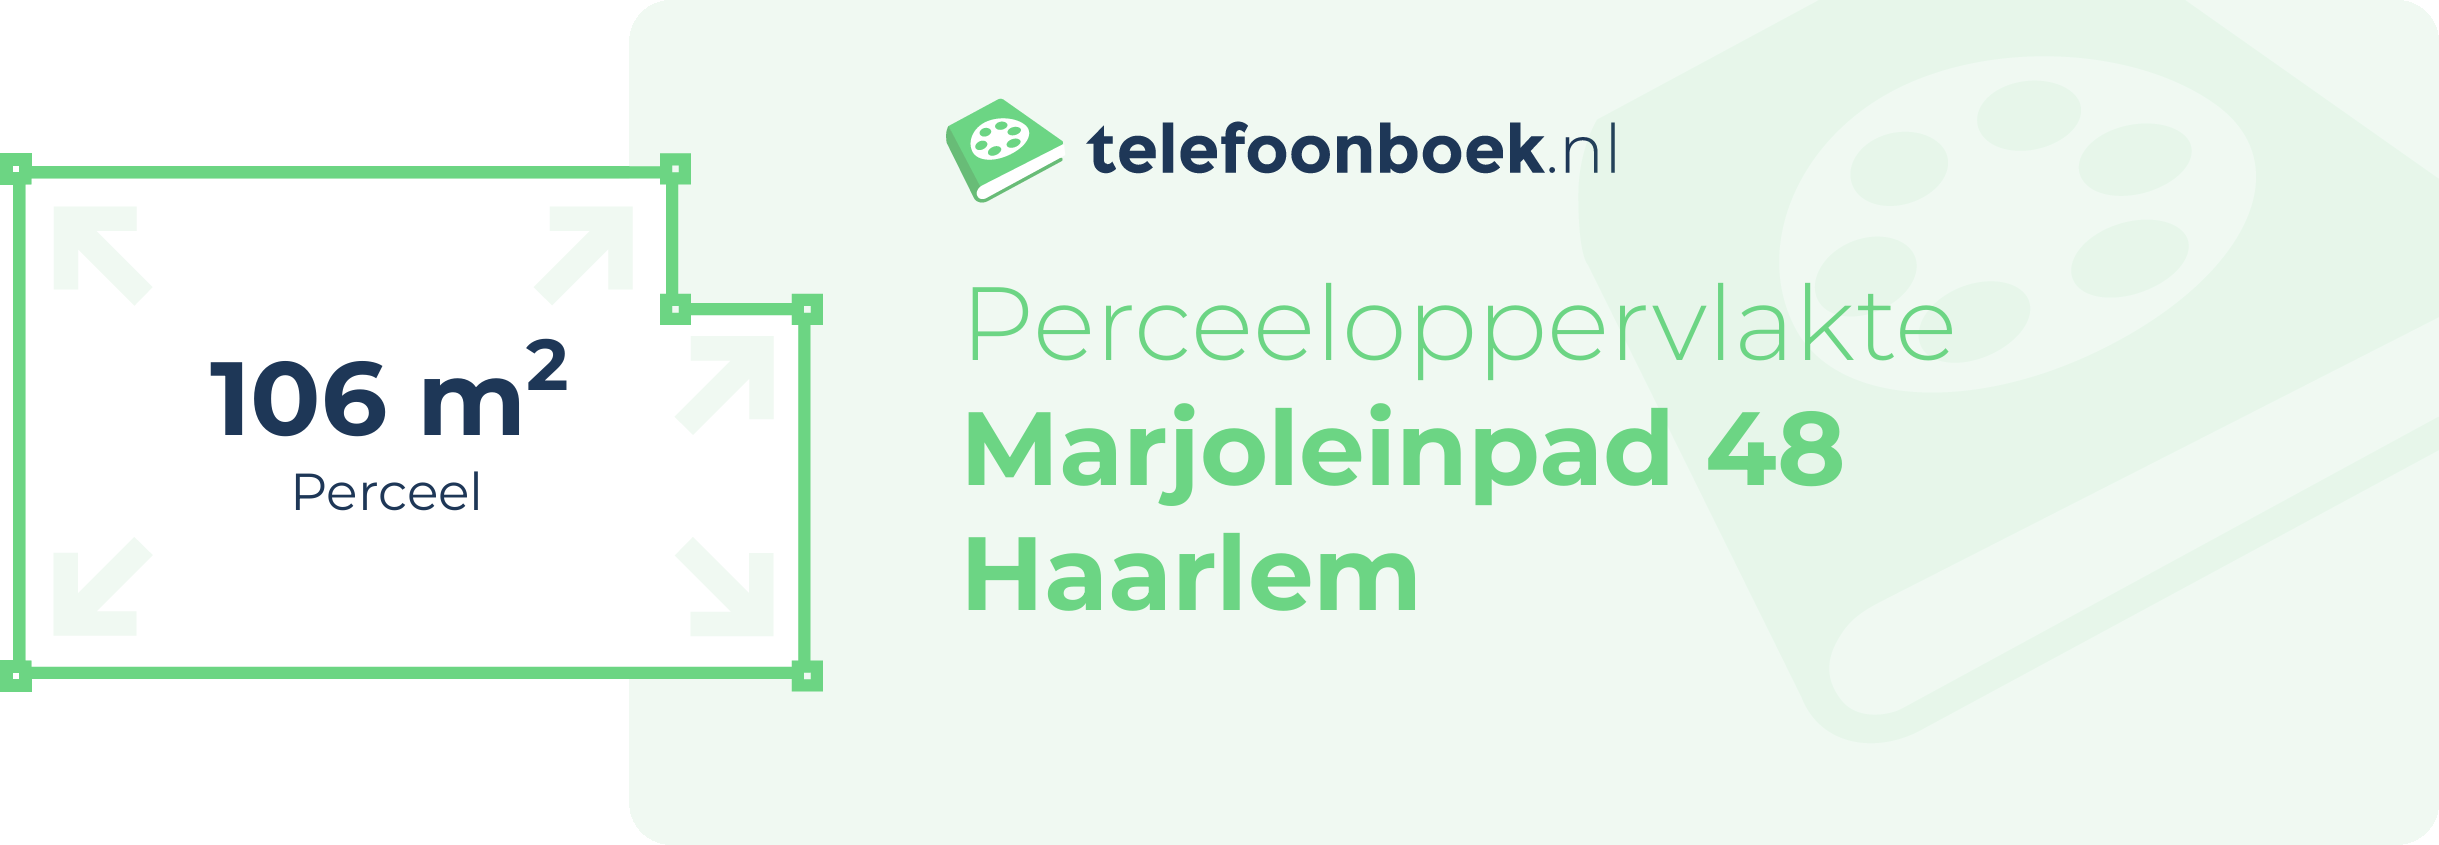 Perceeloppervlakte Marjoleinpad 48 Haarlem